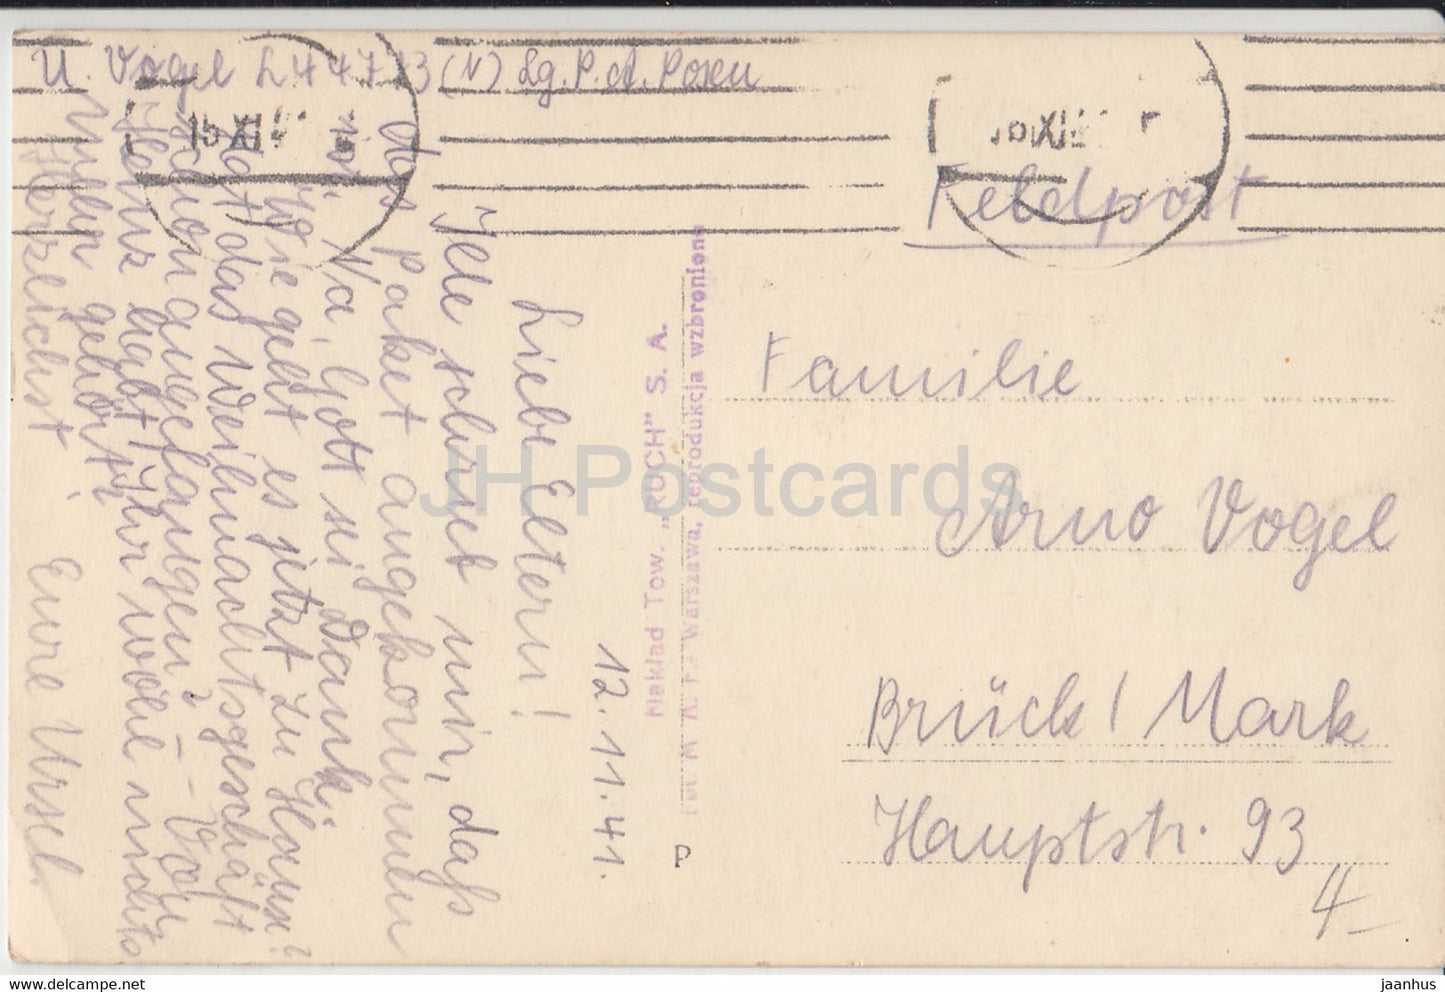 Warszawa - Krakowskie Przedmiescie - Feldpost - alte Postkarte - 1941 - Polen - gebraucht